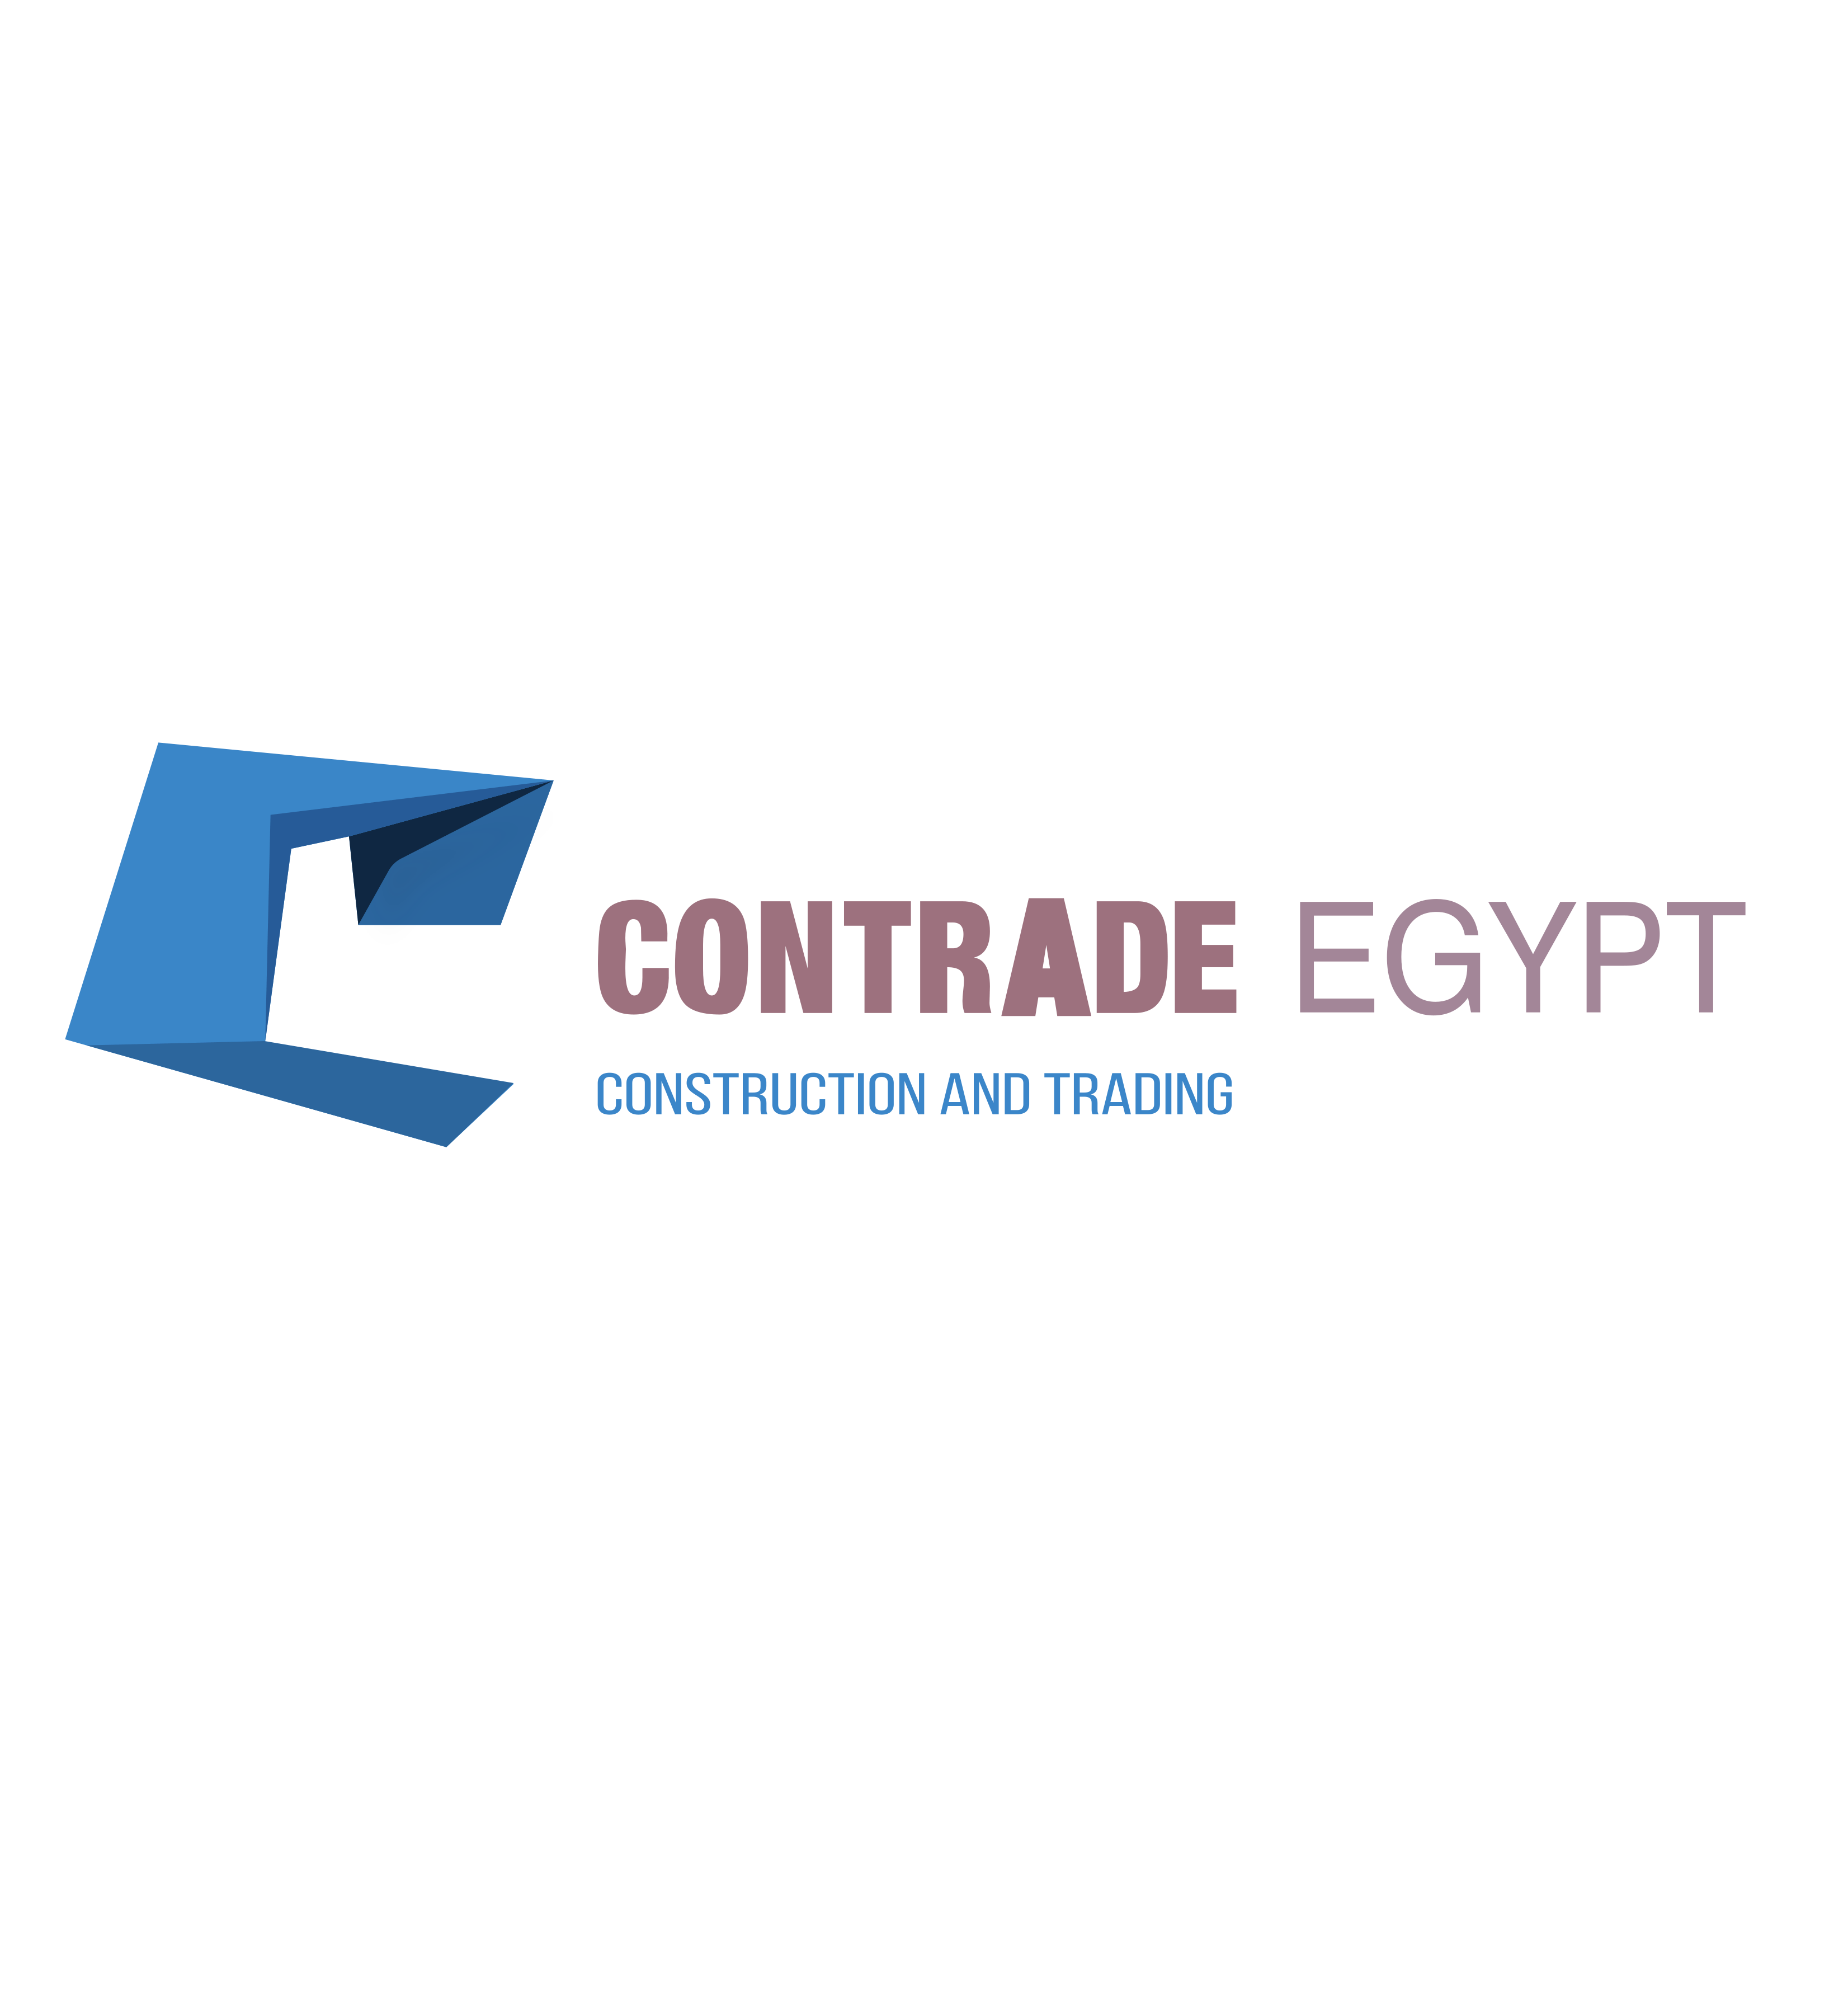 Contrade Egypt